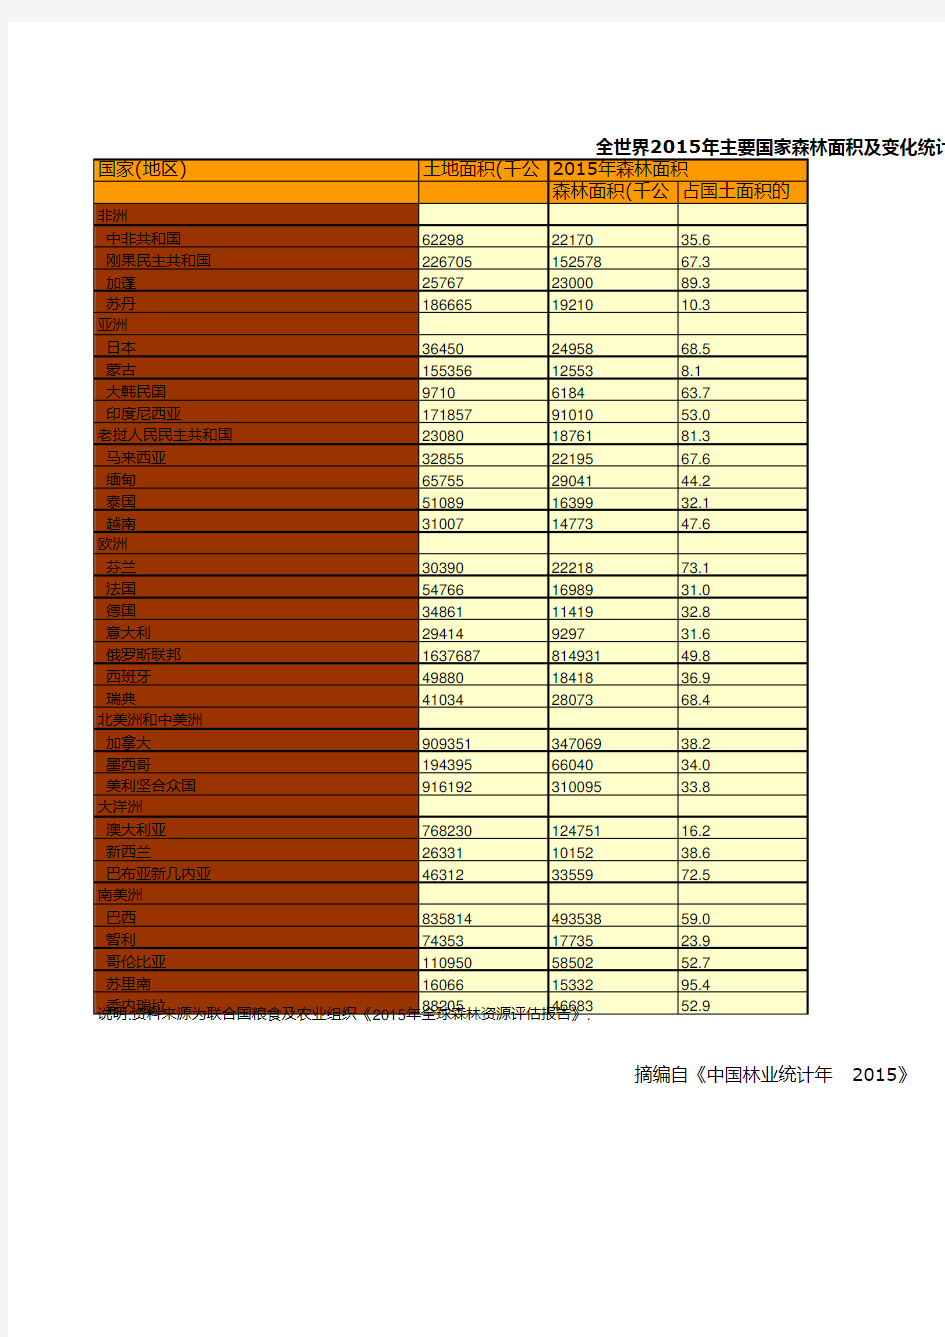 中国林业草原统计年鉴：全世界2015年主要国家森林面积及变化统计